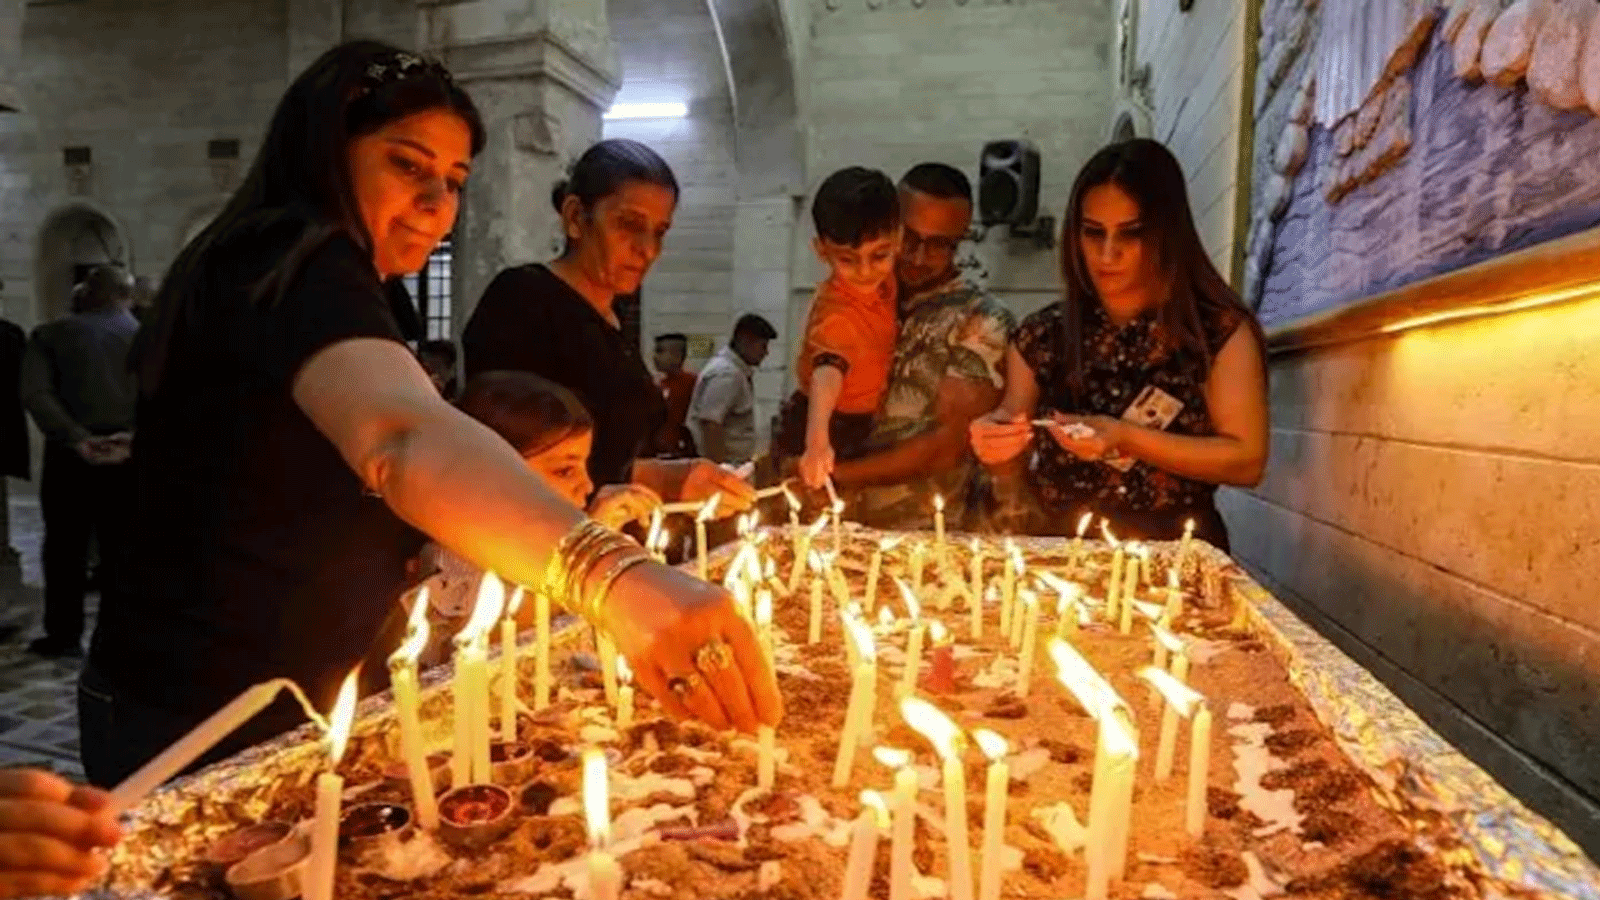 المسيحيون الأرثوذكس العراقيون يحتفلون بعيد الفصح في كنيسة دير مور ماتاي القديم في قرية بعشيقة